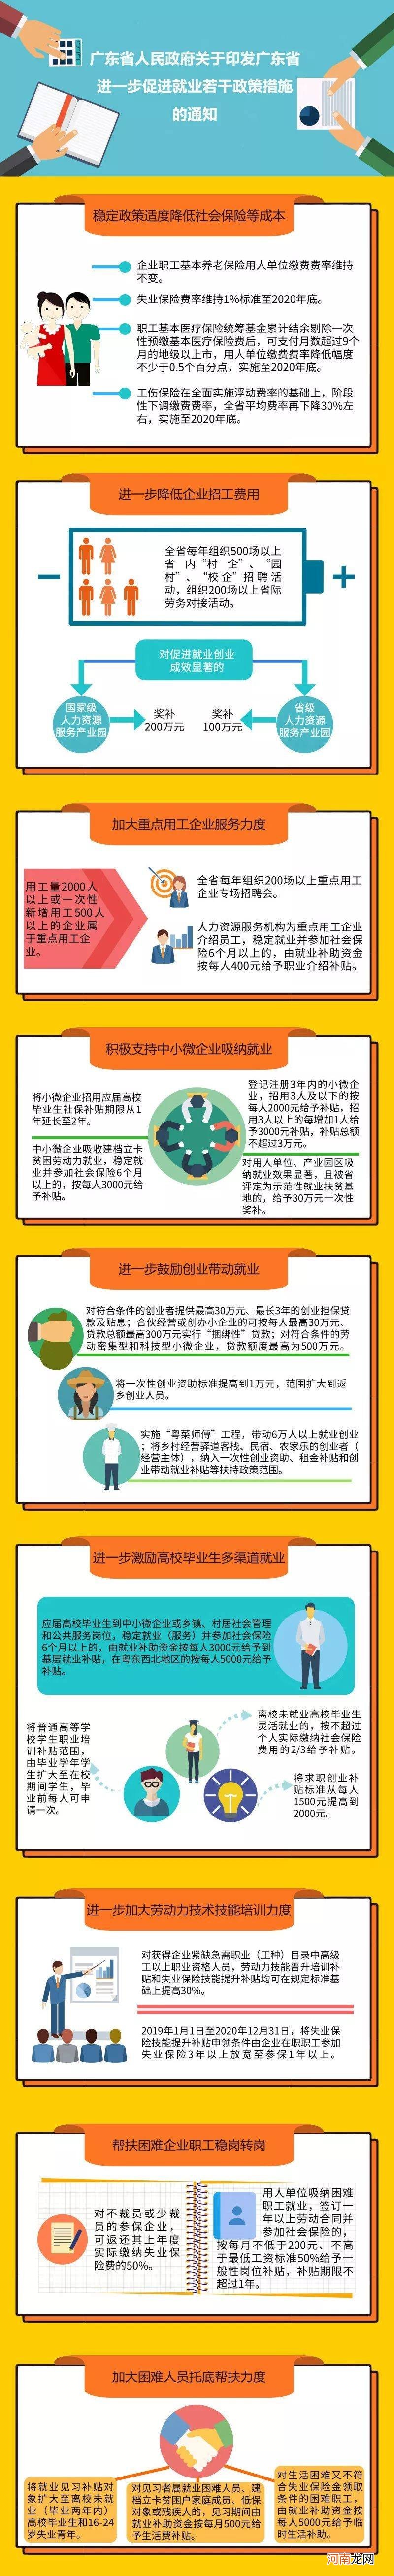 上海政府创业扶持政策 上海政府创业扶持政策补贴